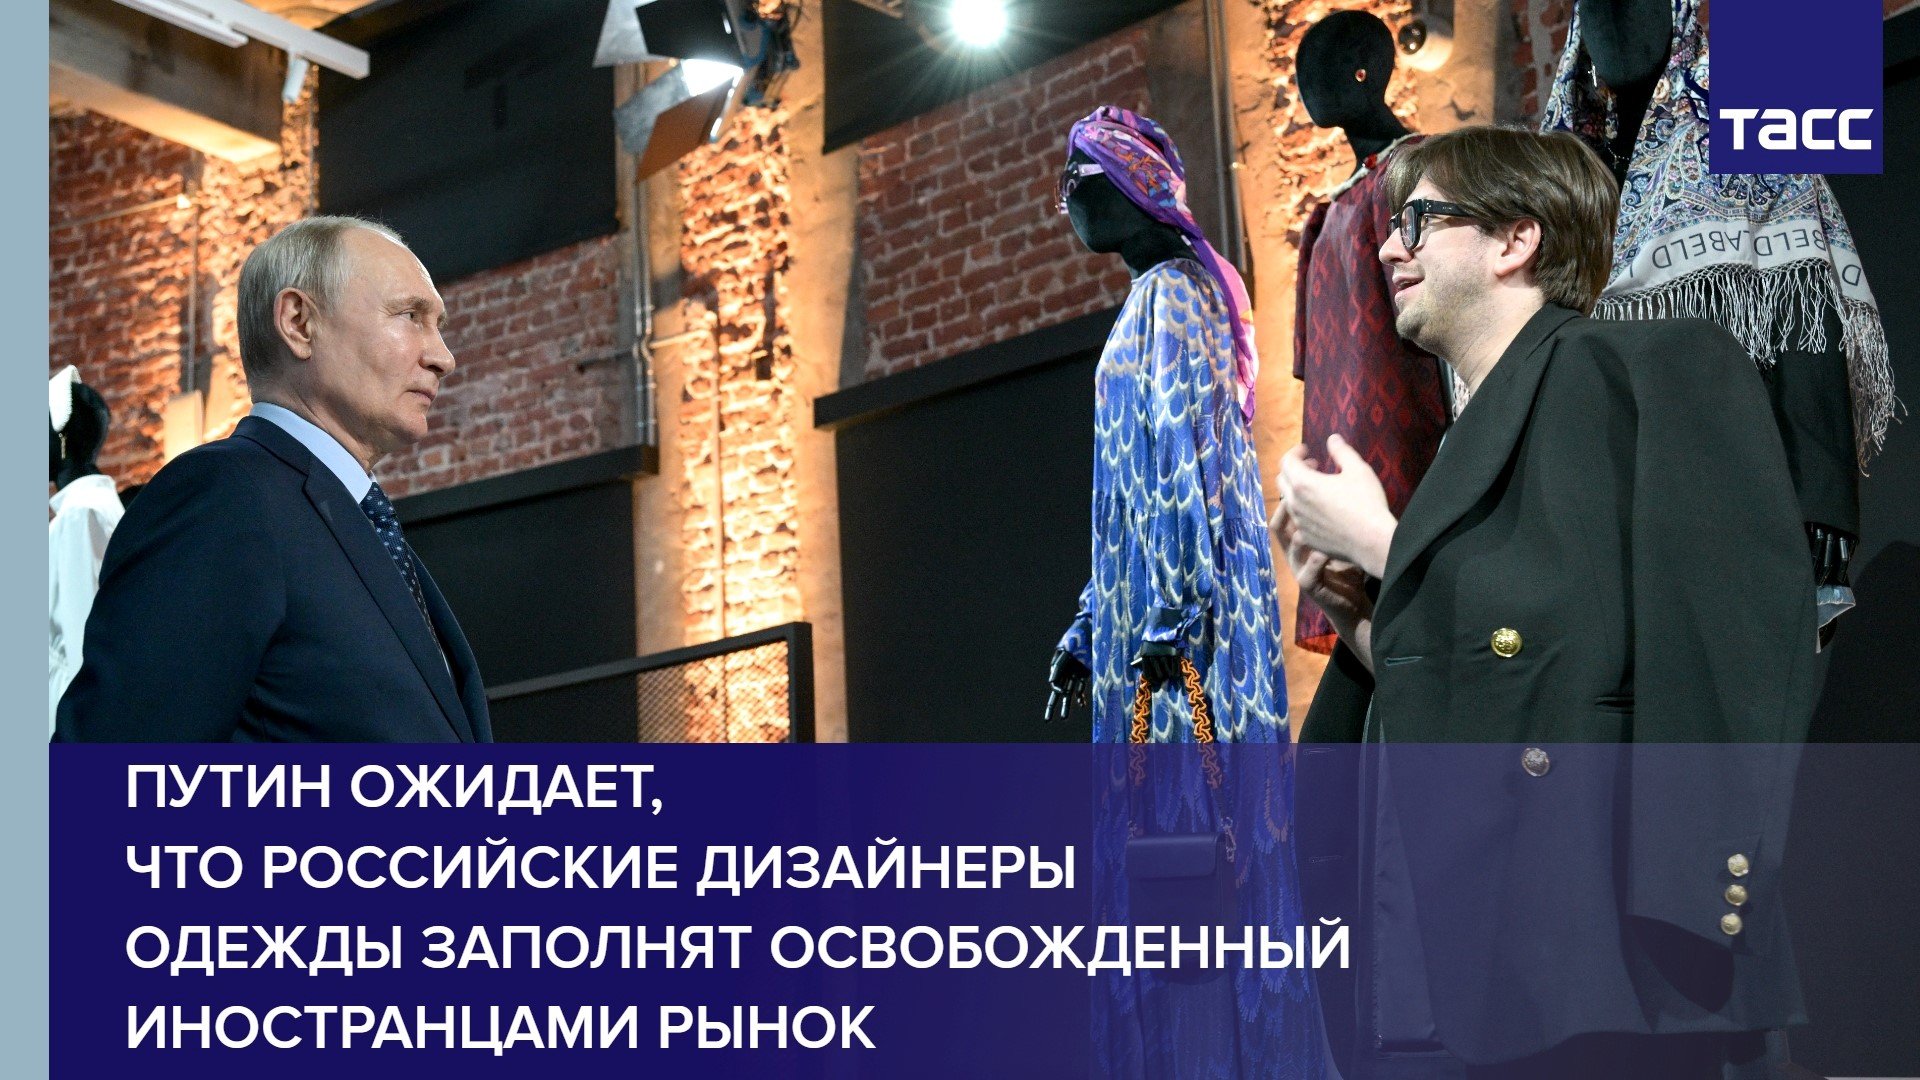 Путин ожидает, что российские дизайнеры одежды заполнят освобожденный иностранцами рынок #shorts